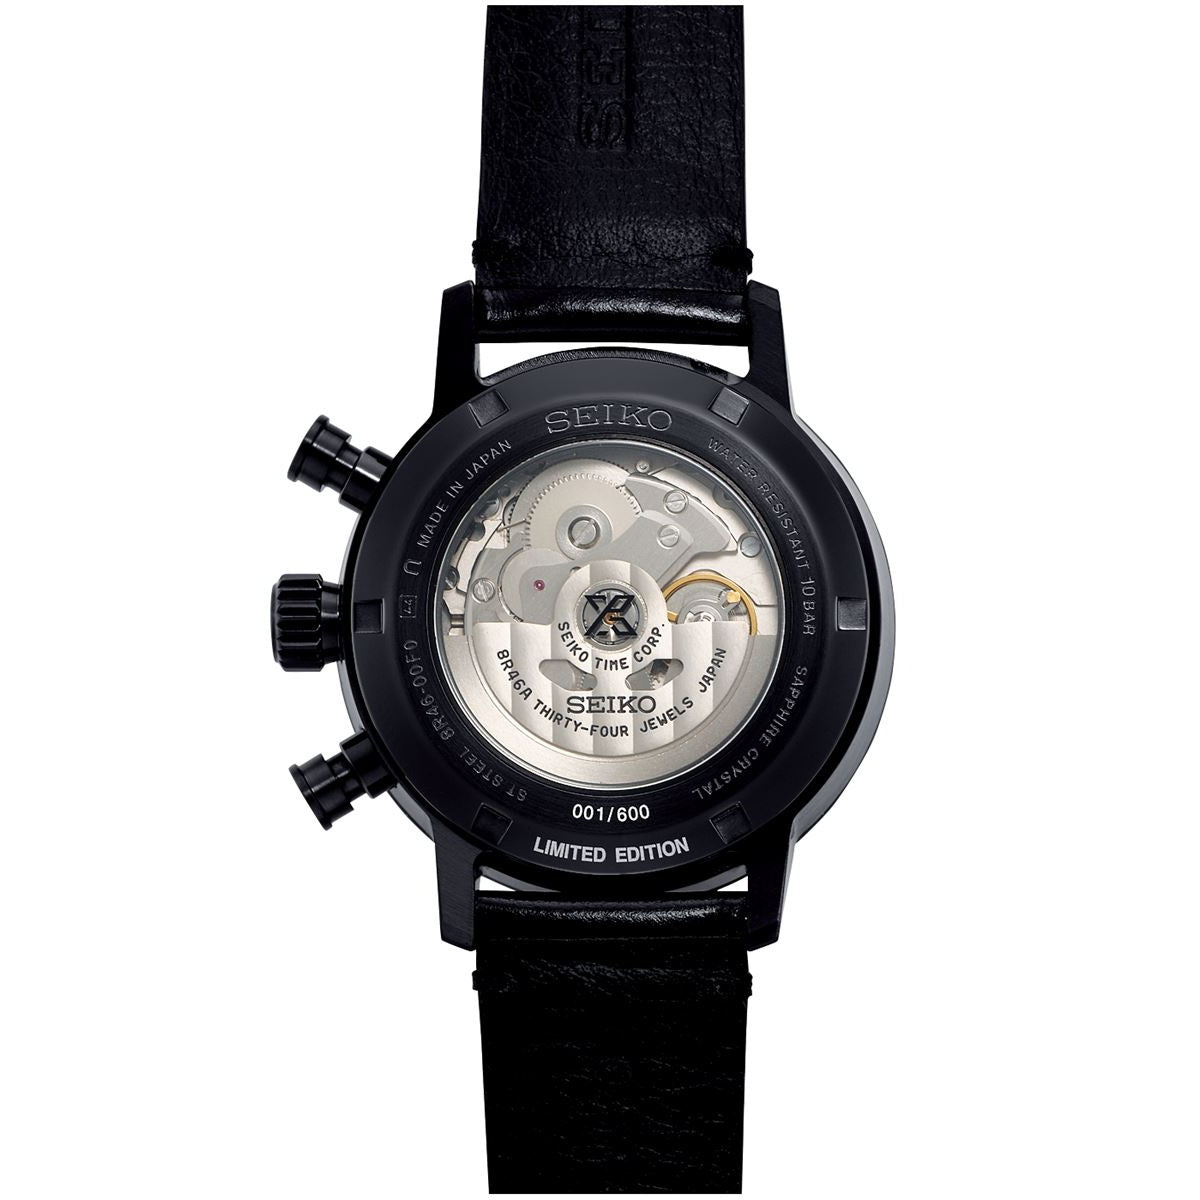 セイコー プロスペックス SEIKO PROSPEX 自動巻き メカニカル 腕時計 メンズ SPEEDTIMER メカニカルクロノグラフ Limited Edition SBEC019